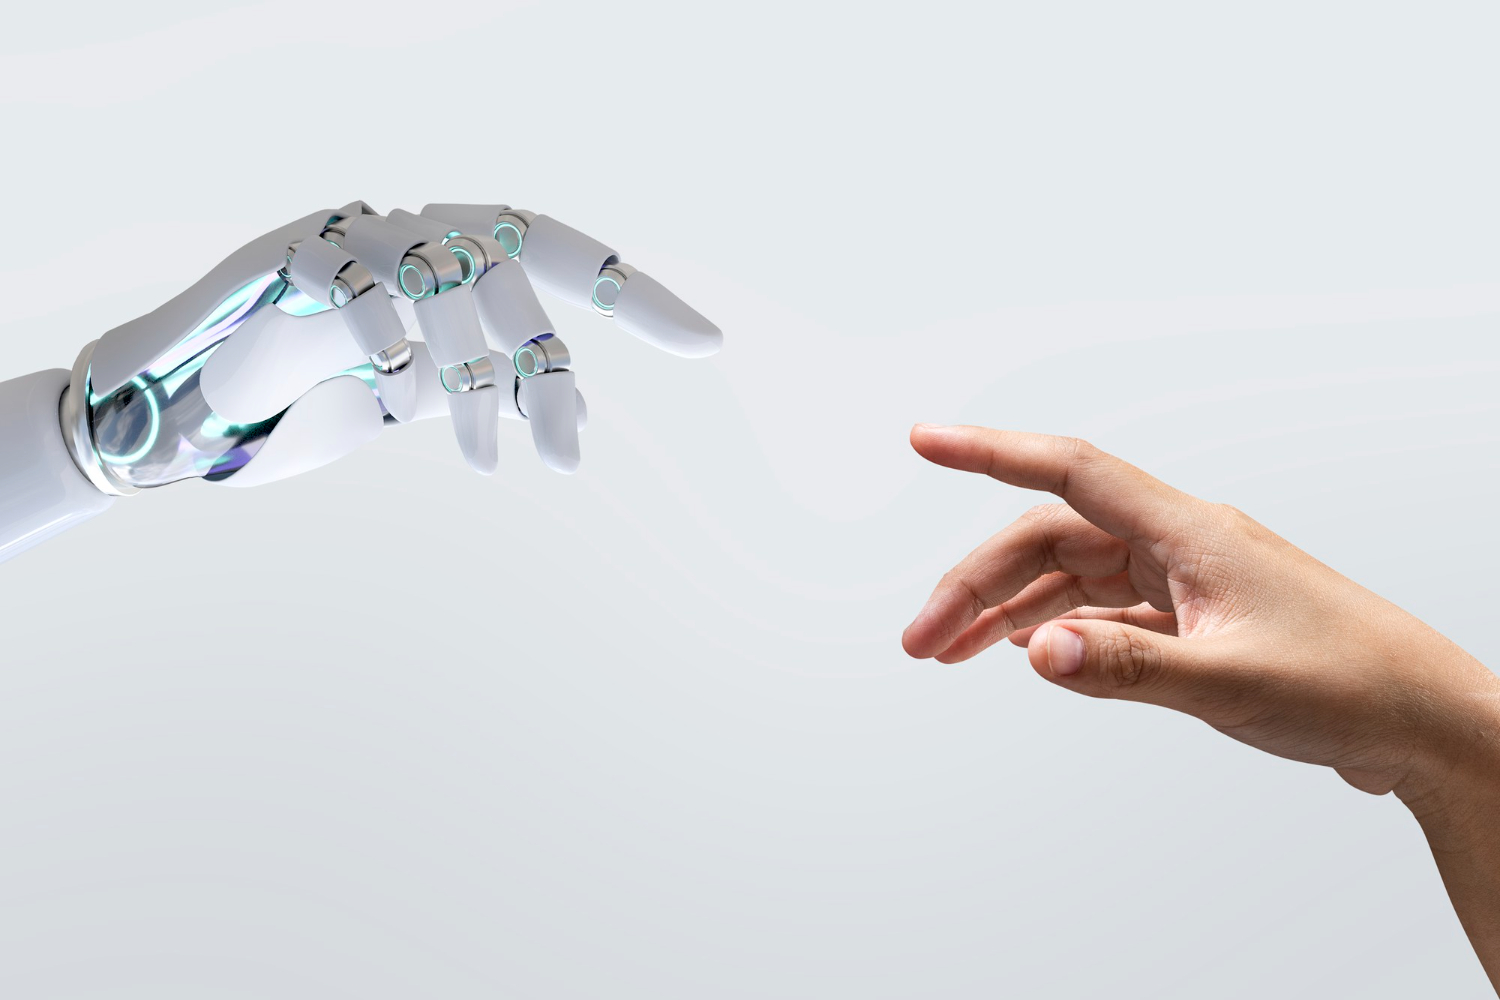 Etyka i potencjalne zagrożenia związane ze sztuczną inteligencją i uczeniem maszynowym